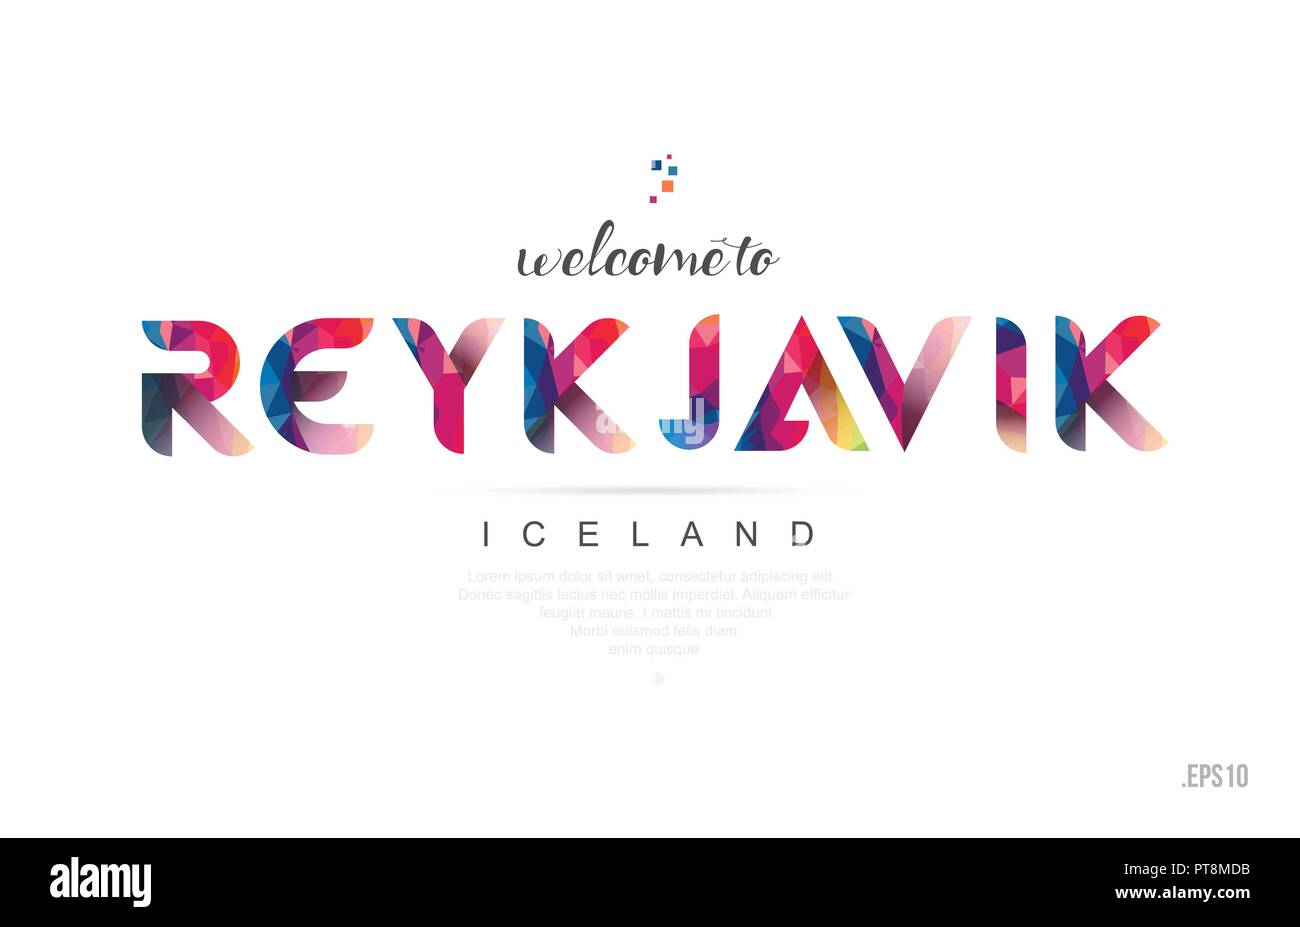 Bienvenue à Reykjavik Islande carte et lettre design en couleur arc-en-ciel coloré et design icône typographique Illustration de Vecteur